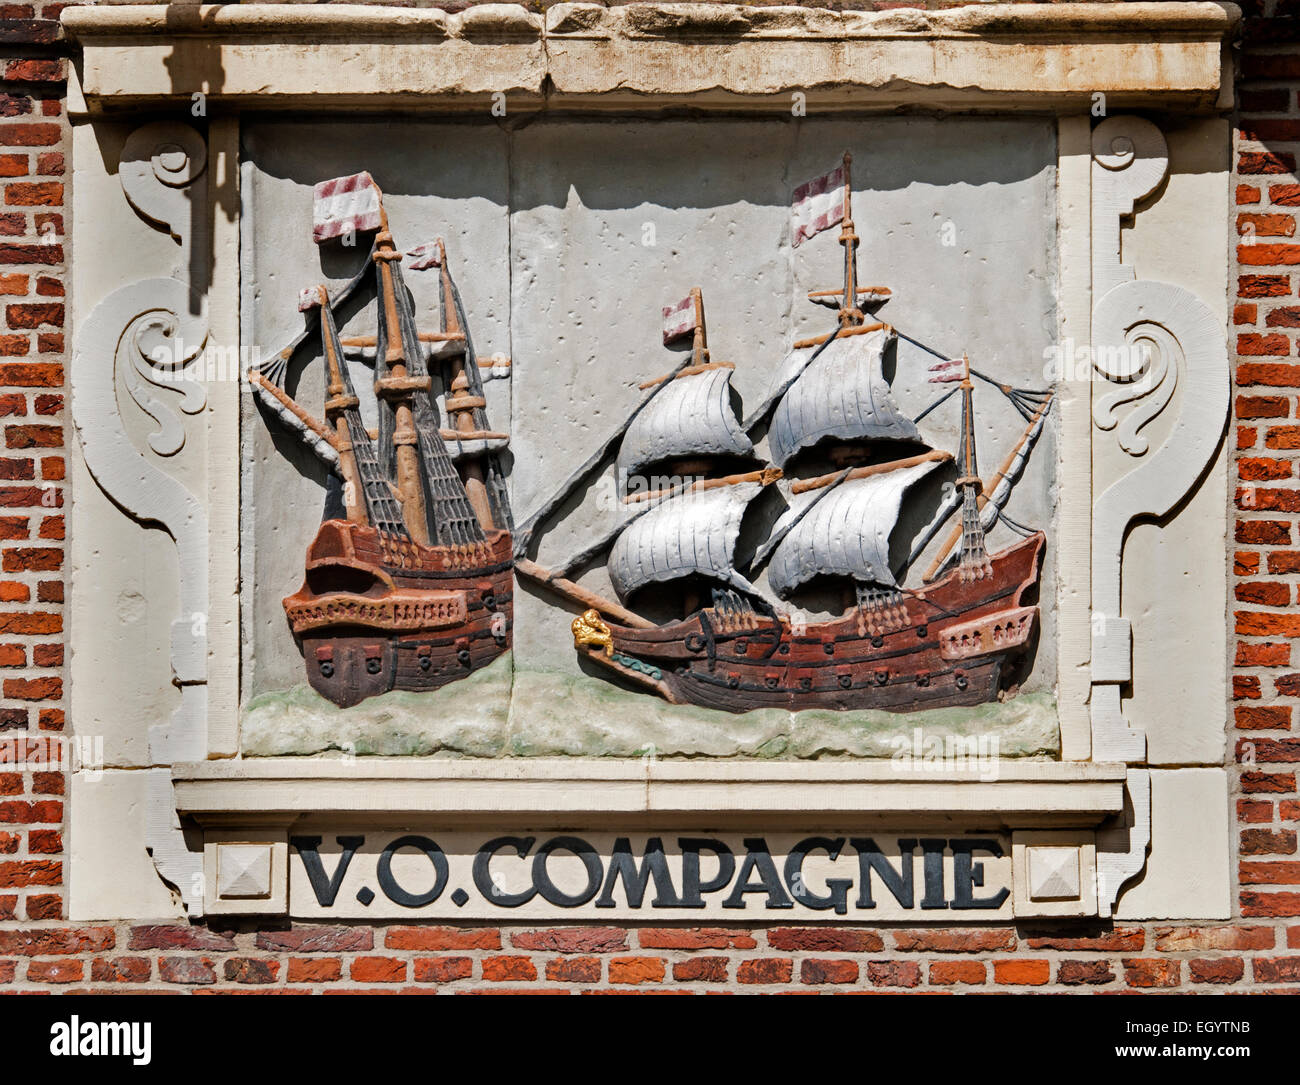 La facciata di questo magazzino di 1610 la Dutch East India Company ( VOC ) è una placca con due sotto Hoorn bandiera delle navi. Essi sembrano avere la forma di un "traatvaarder' o 'nave di ritorno'. Foto Stock